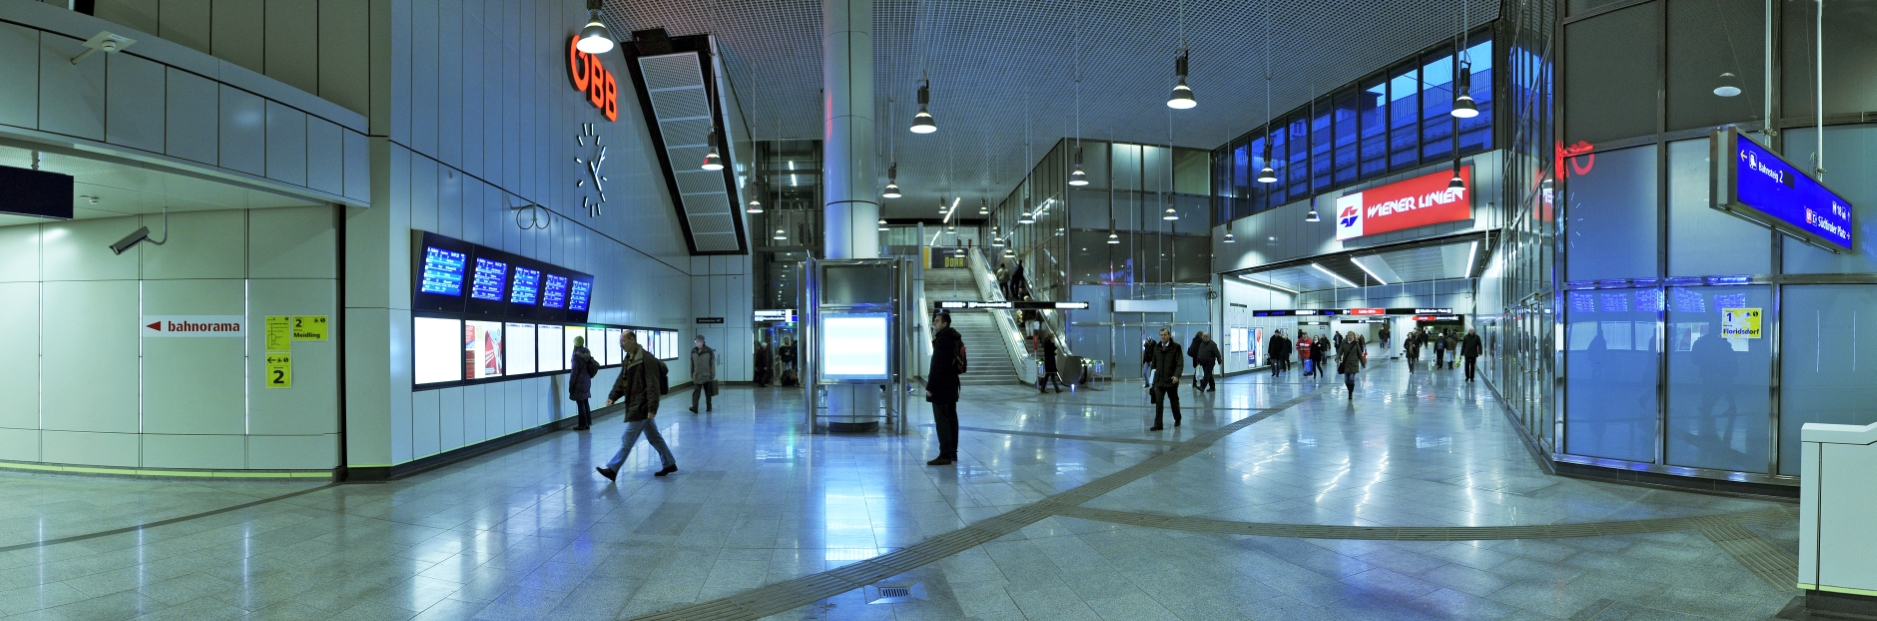 Passage zwischen dem zukünftigen Wiener Hauptbahnhof und der U1-Station Südtiroler Platz.